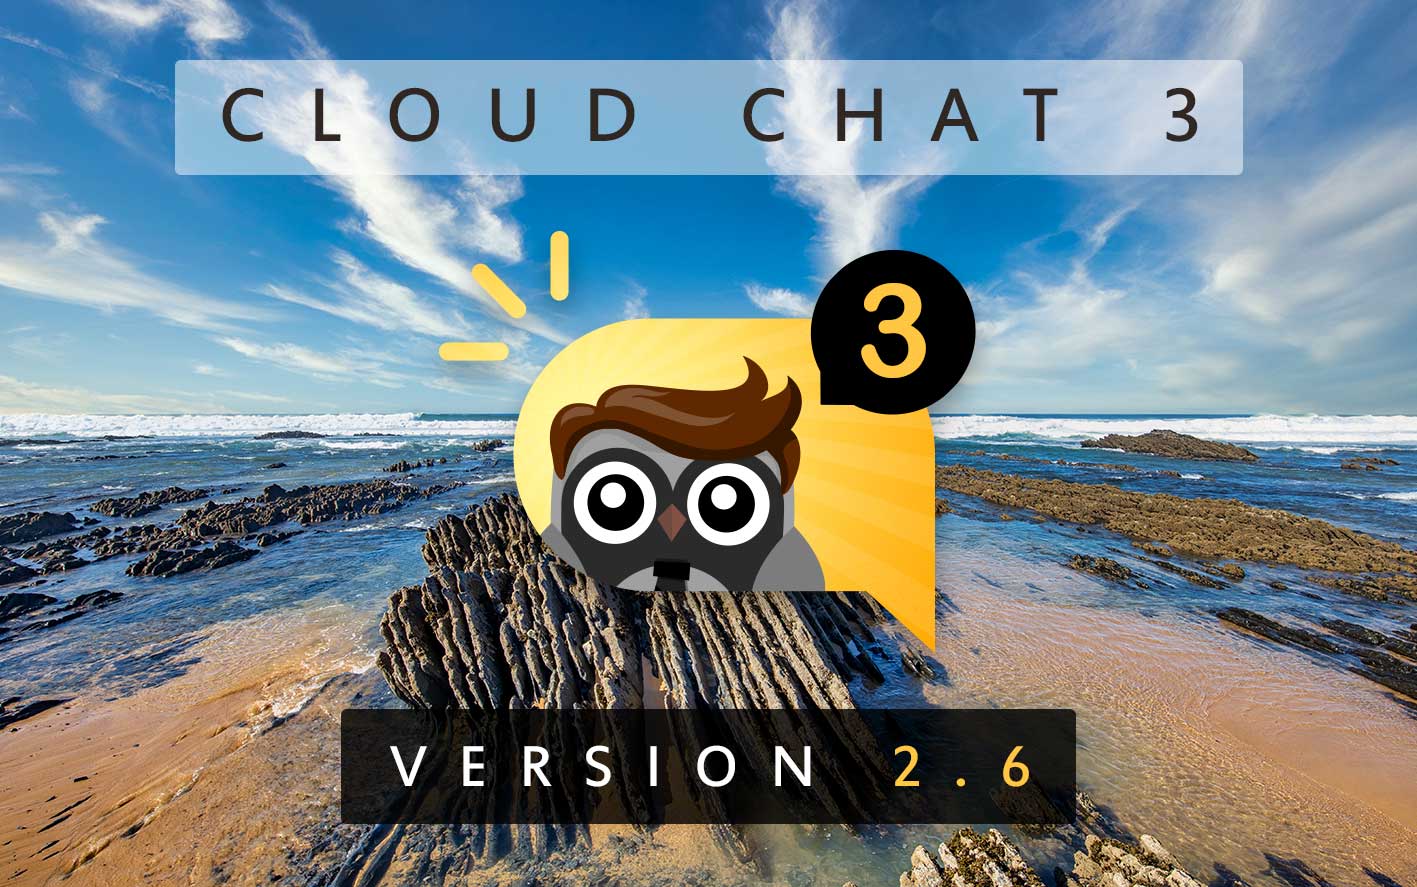 Cloud Chat 3 - Version 2.6